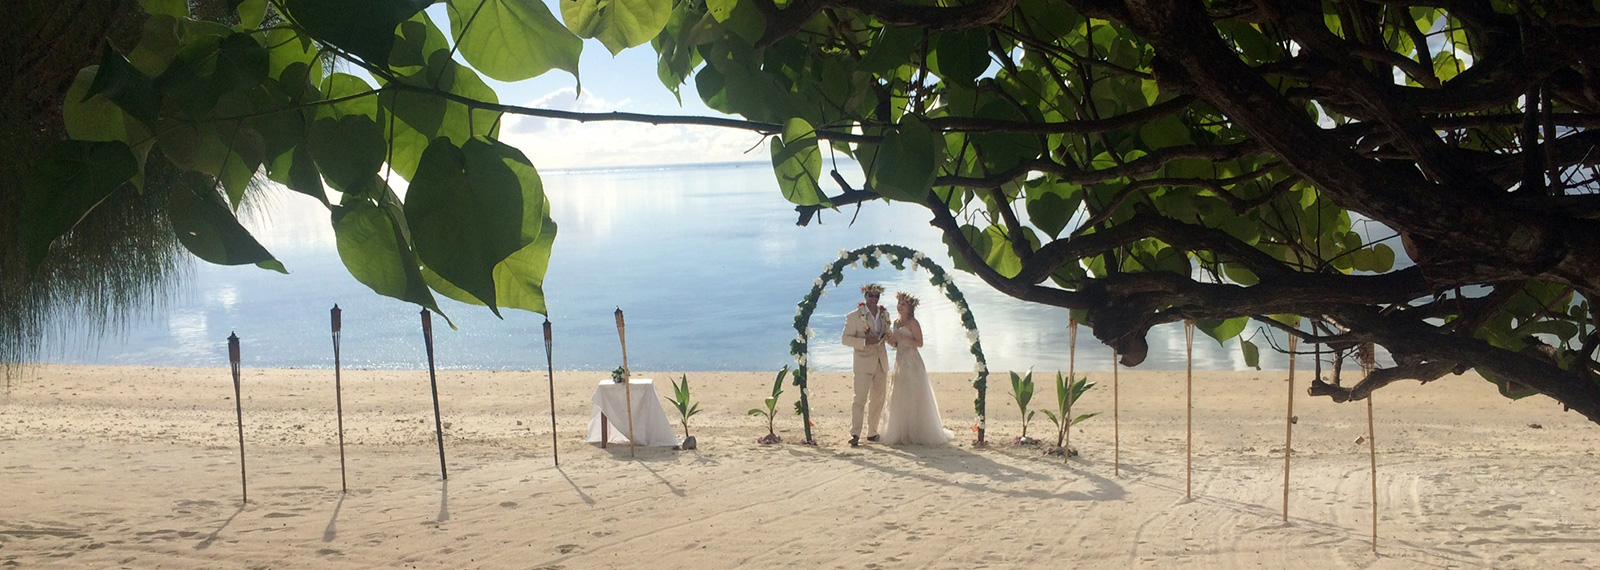 Svadba v exotike - Havaj, Fiji (Fidži) alebo Cookove ostrovy